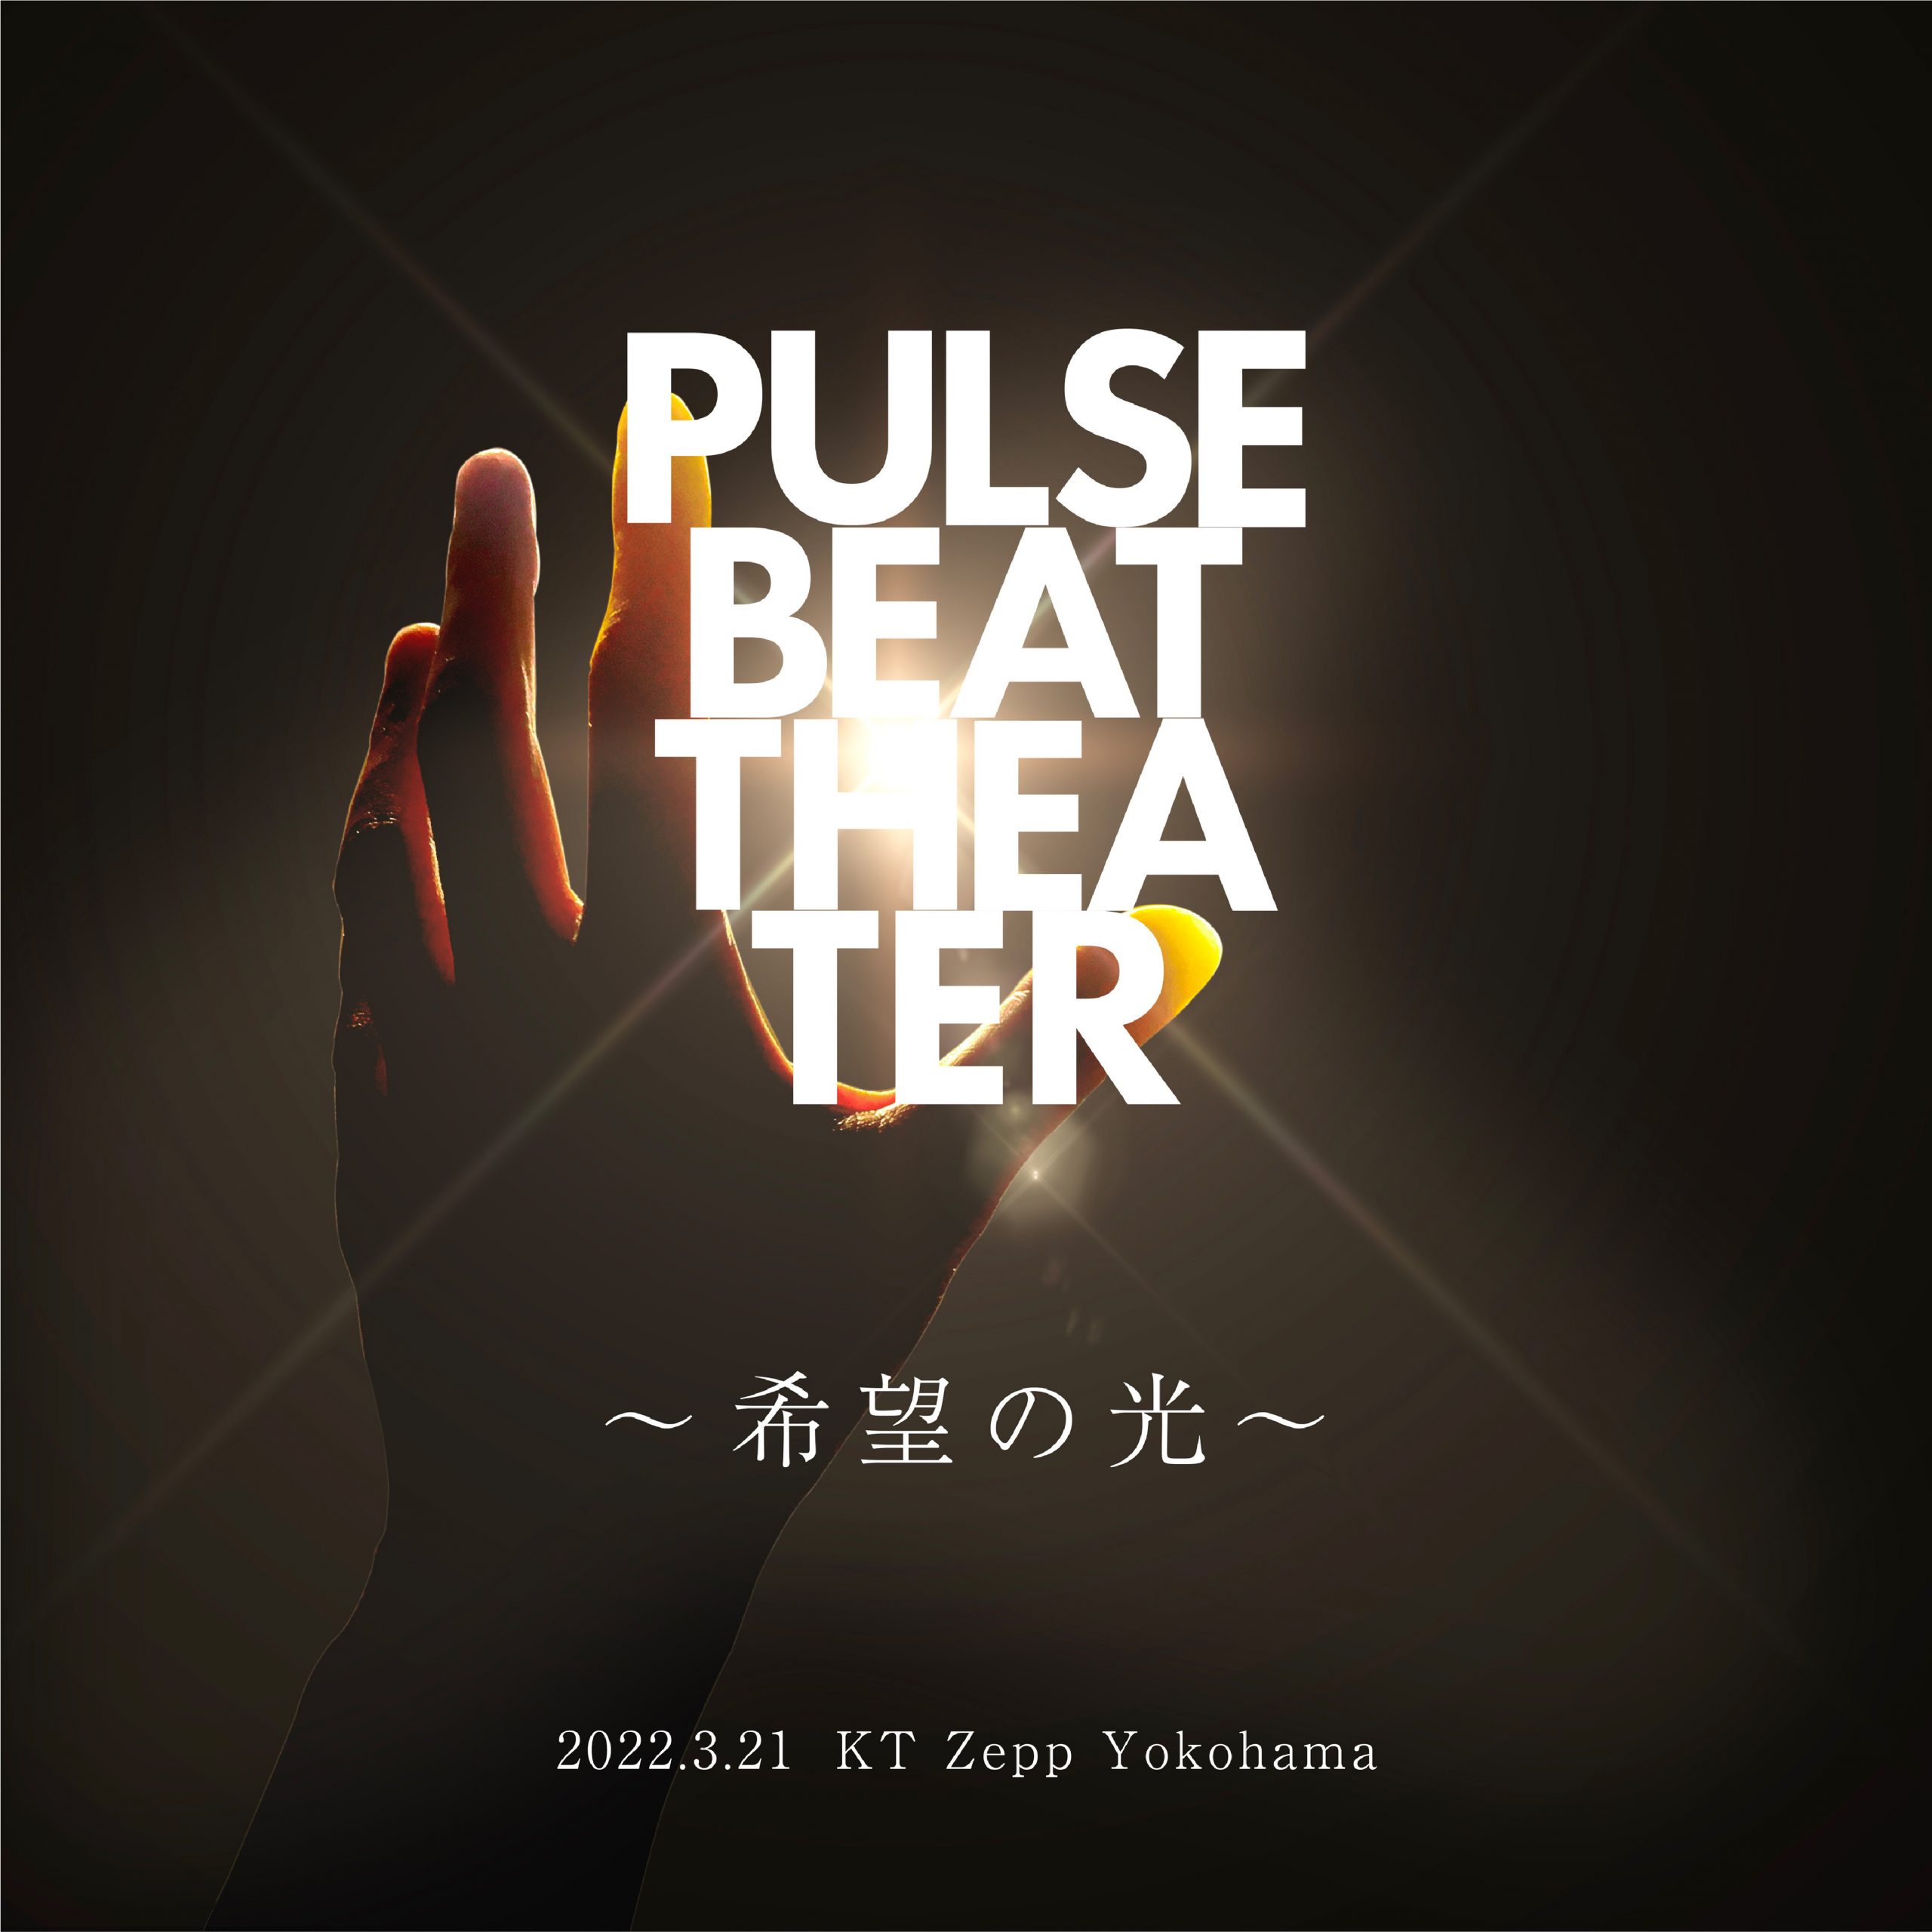 【満員御礼】PULSE BEAT THEATER 〜希望の光〜 2022.3.21 KT Zepp Yokohama